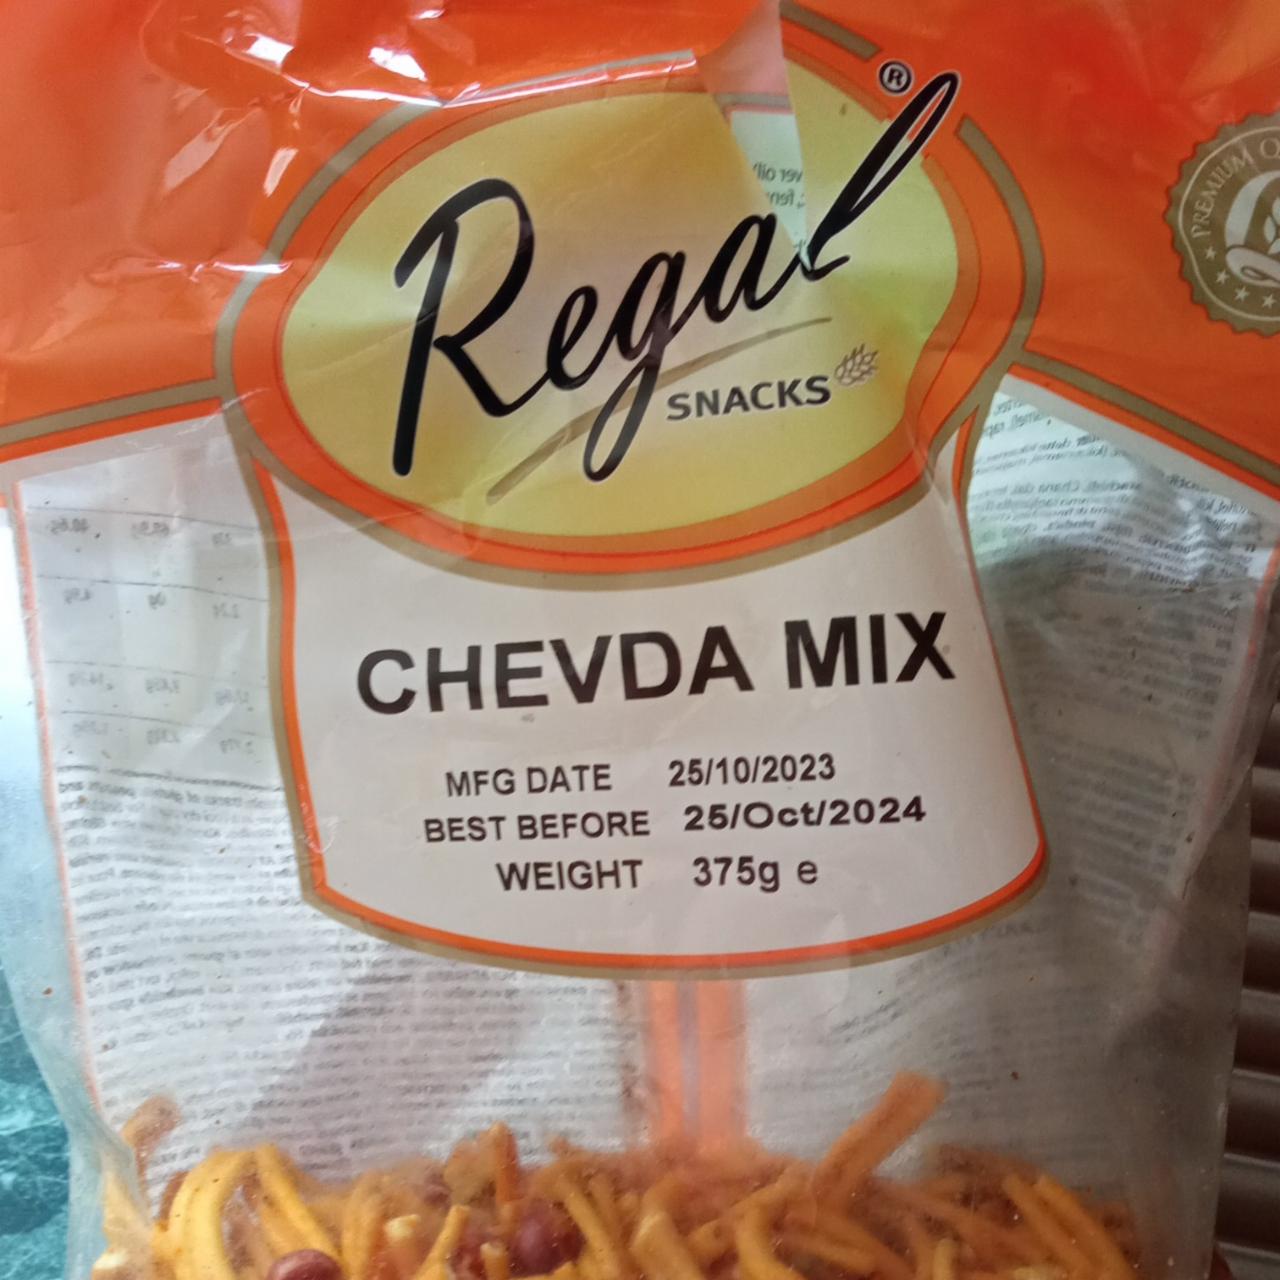 Fotografie - Chevda mix Regal snacks